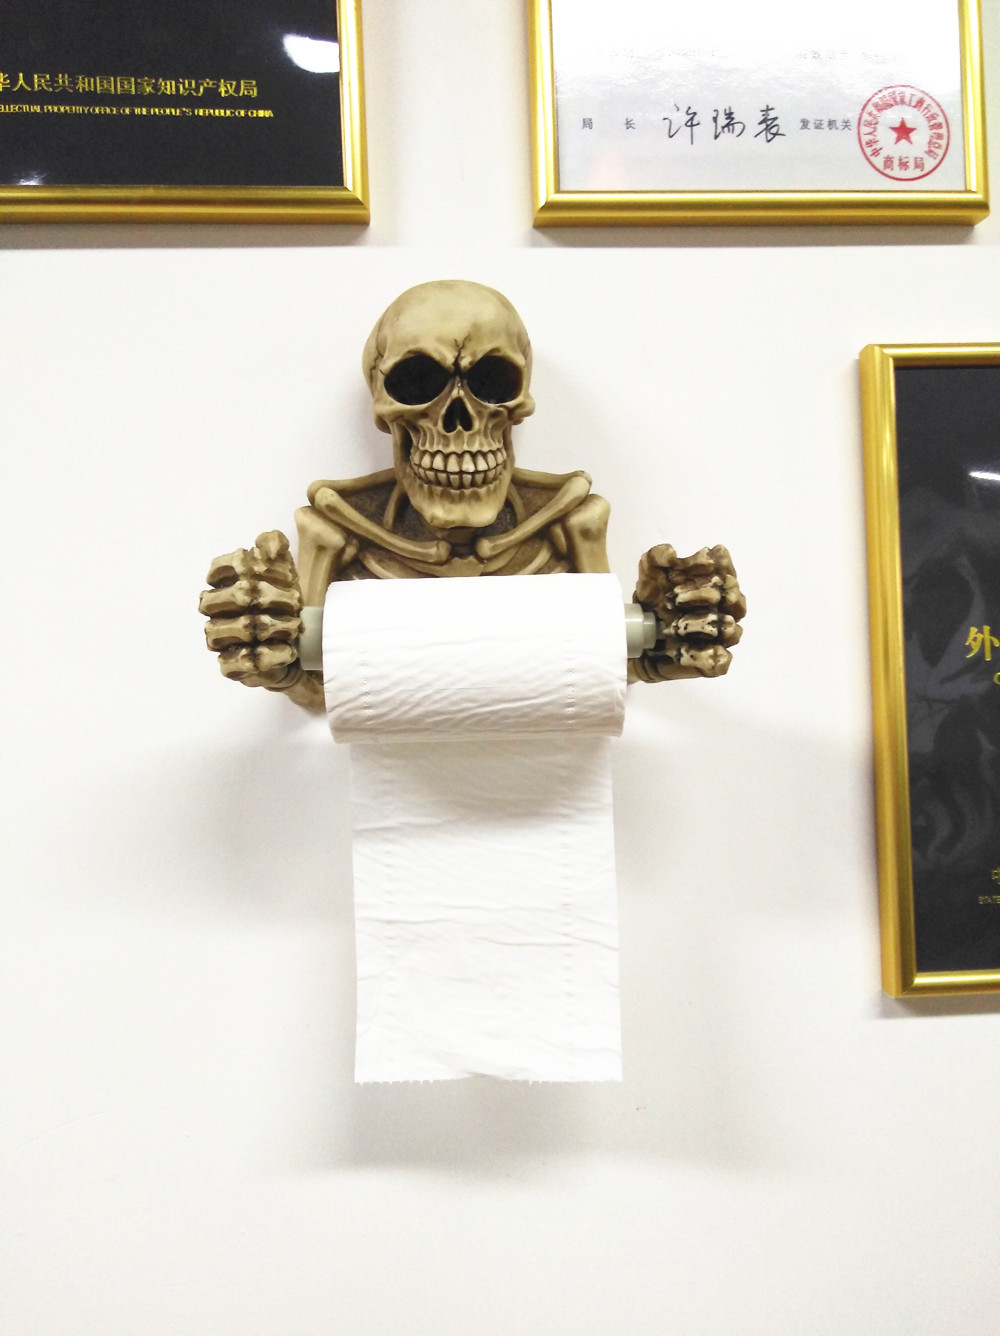 Gothic Skull Toilet Paper Holder-9.jpg